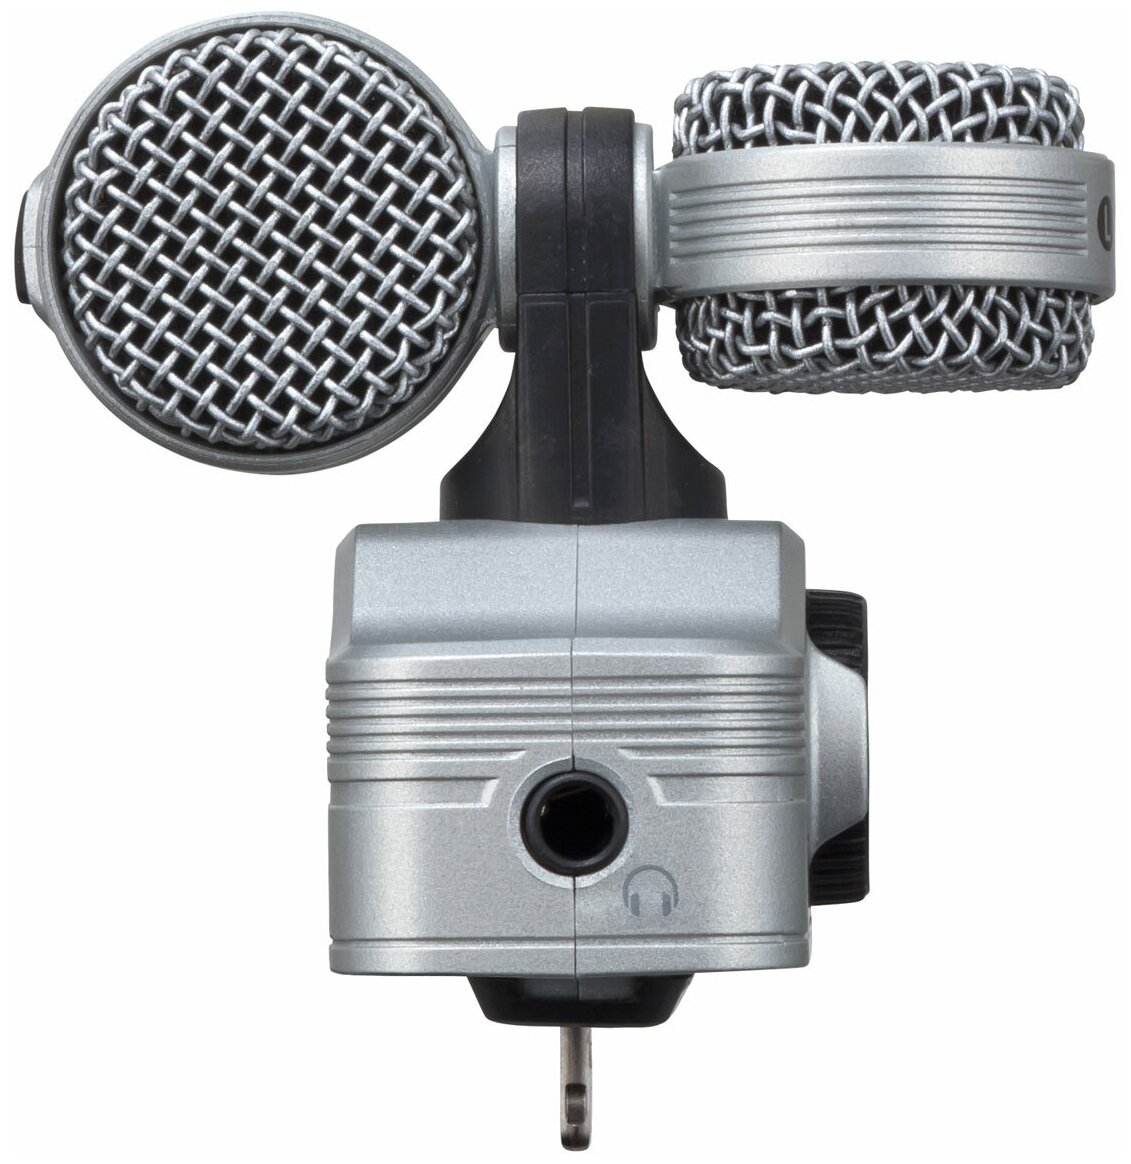 Микрофон Zoom IQ7 для Apple